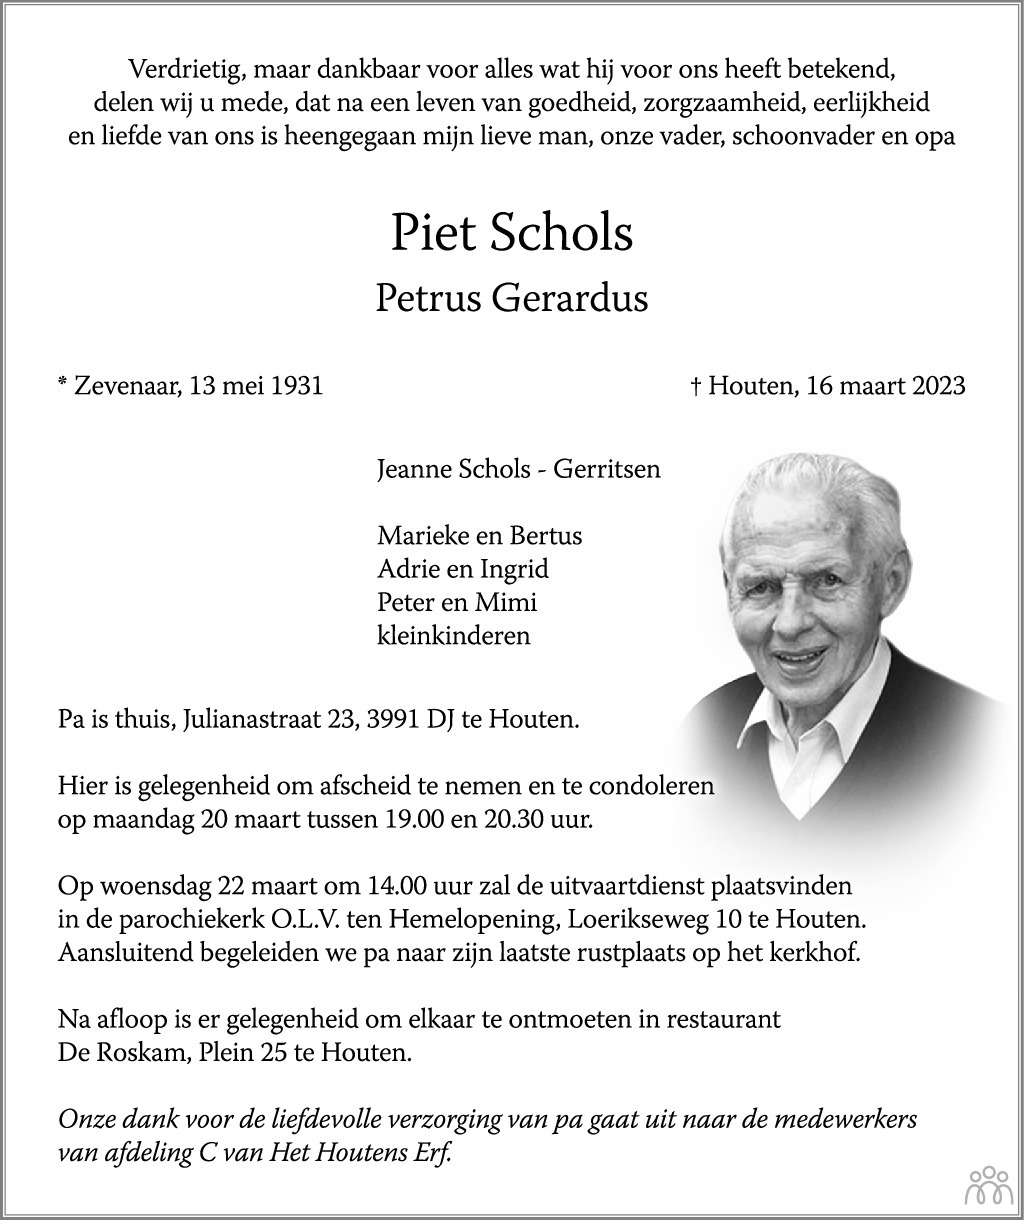 Overlijdensbericht van Piet (Petrus Gerardus) Schols in AD Algemeen Dagblad